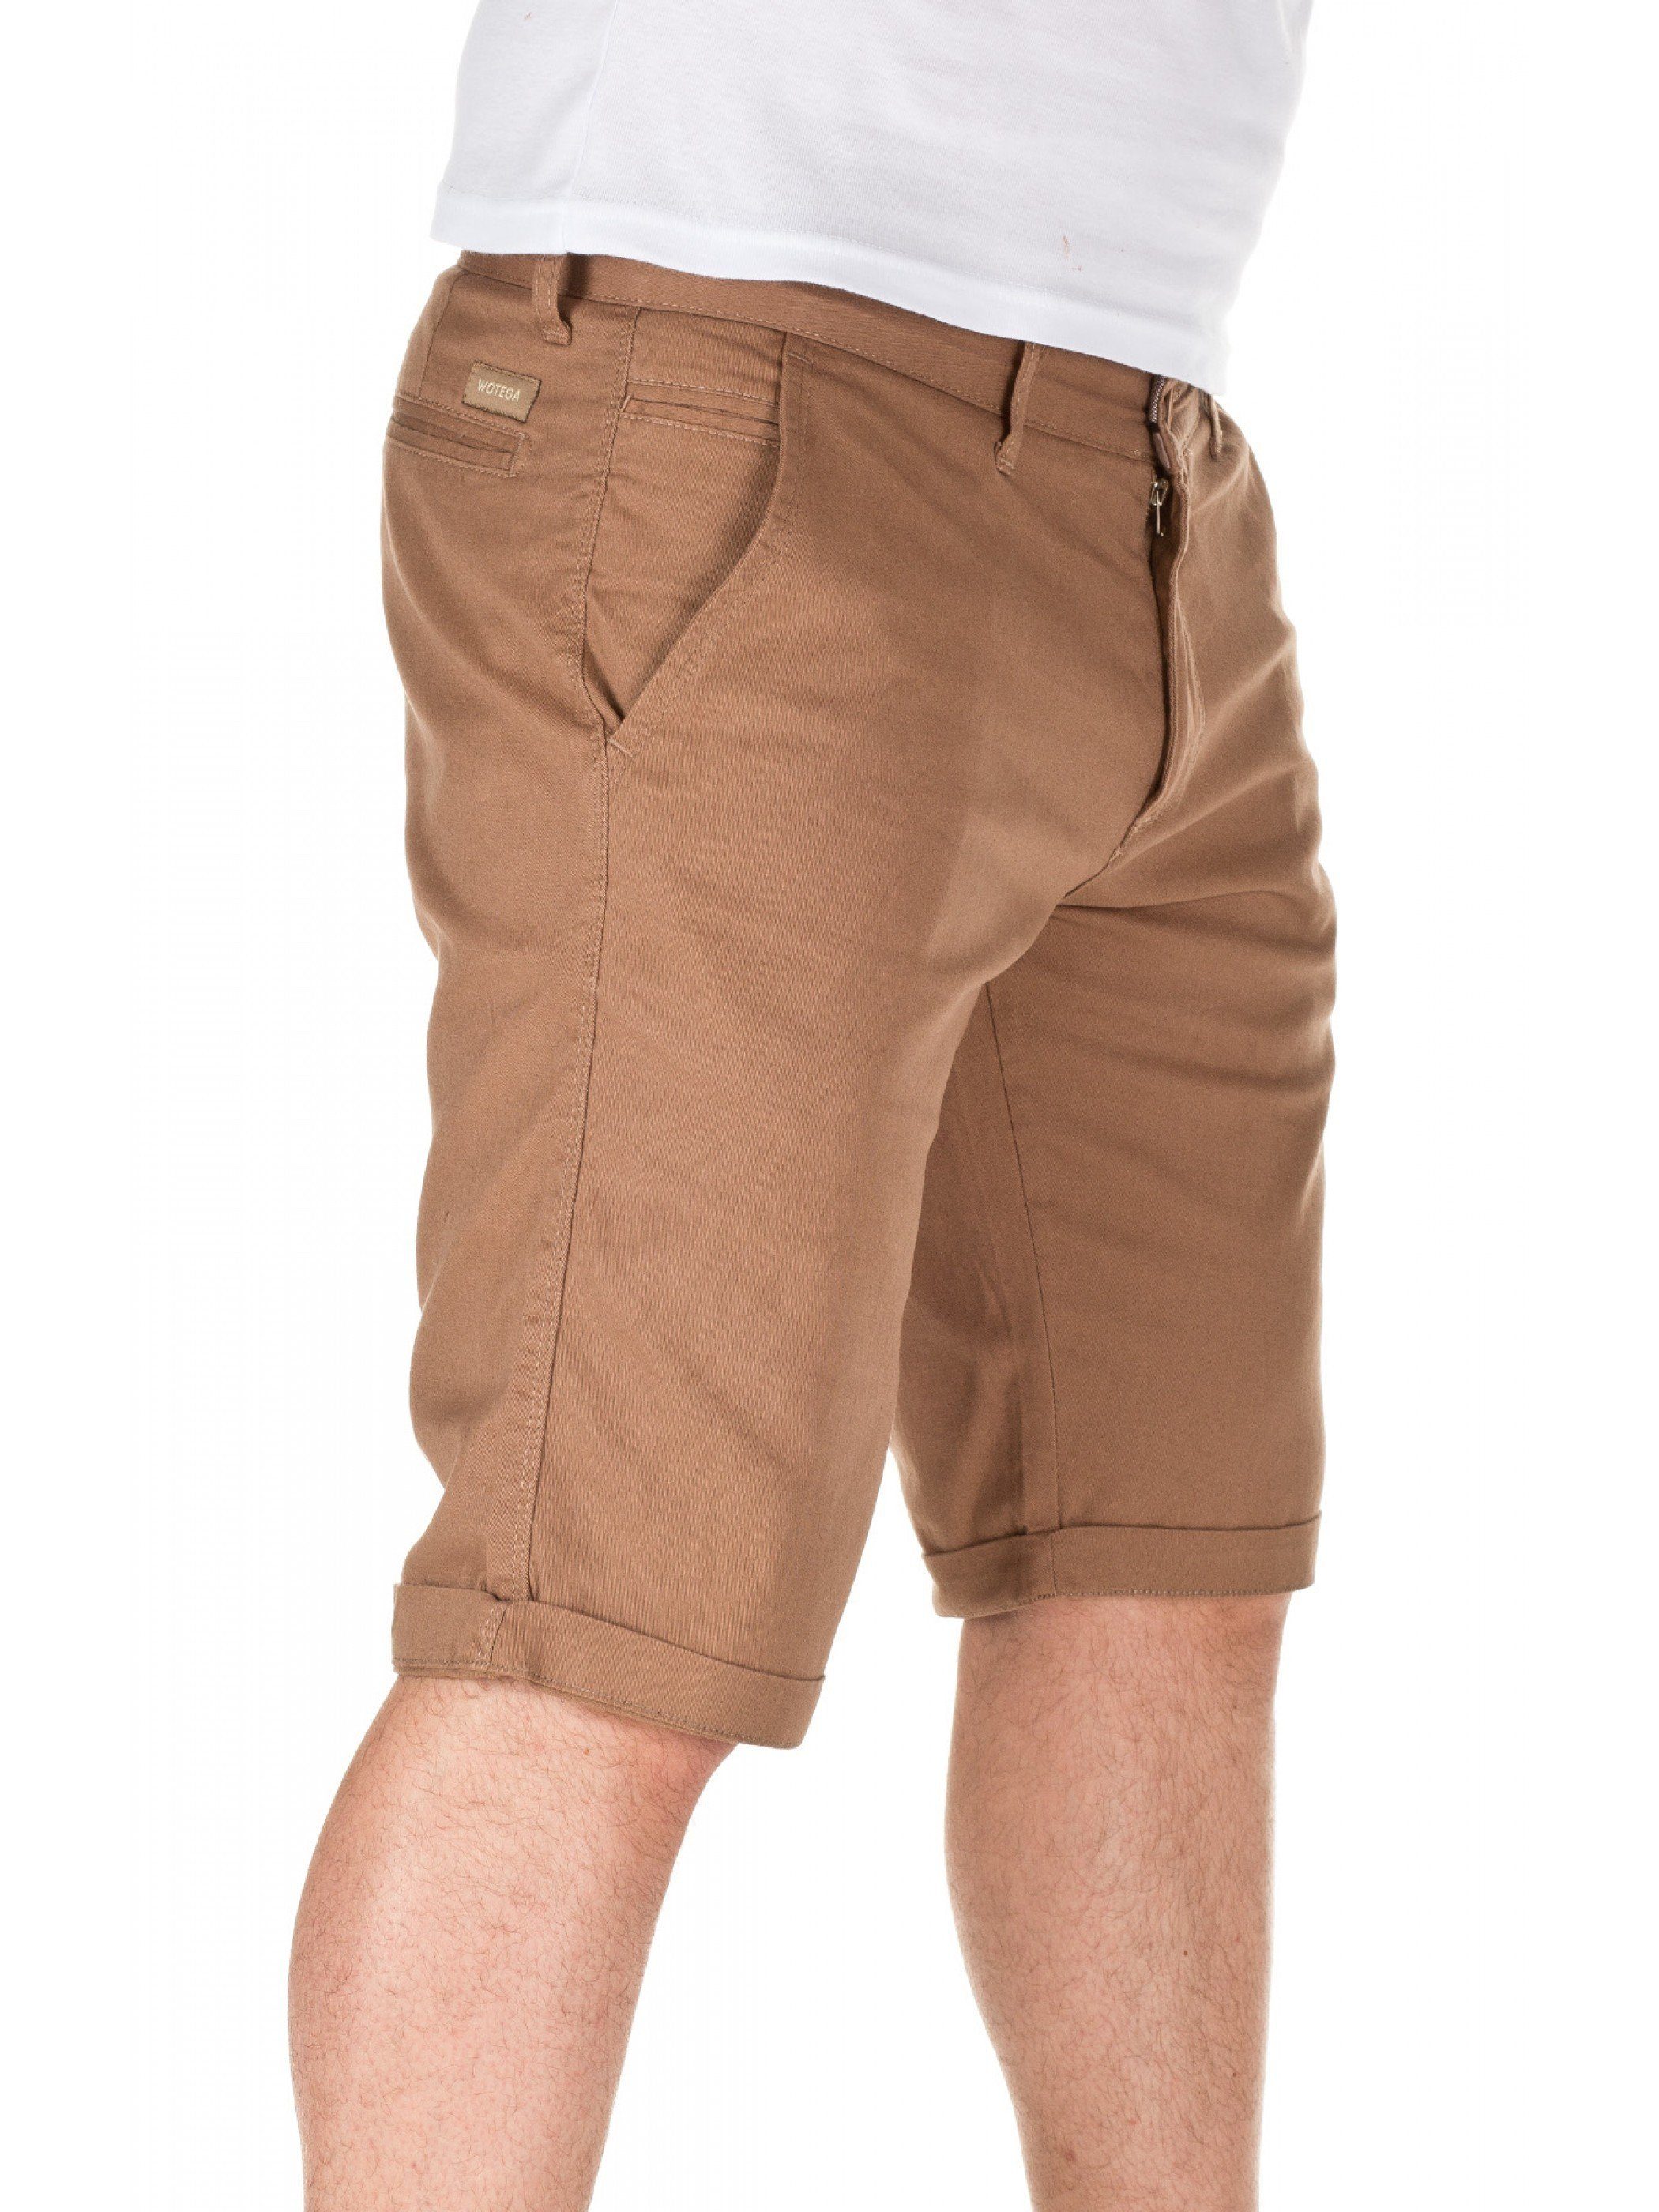 WOTEGA Shorts Chino shorts (camel Kallari Unifarbe in Braun 2000)